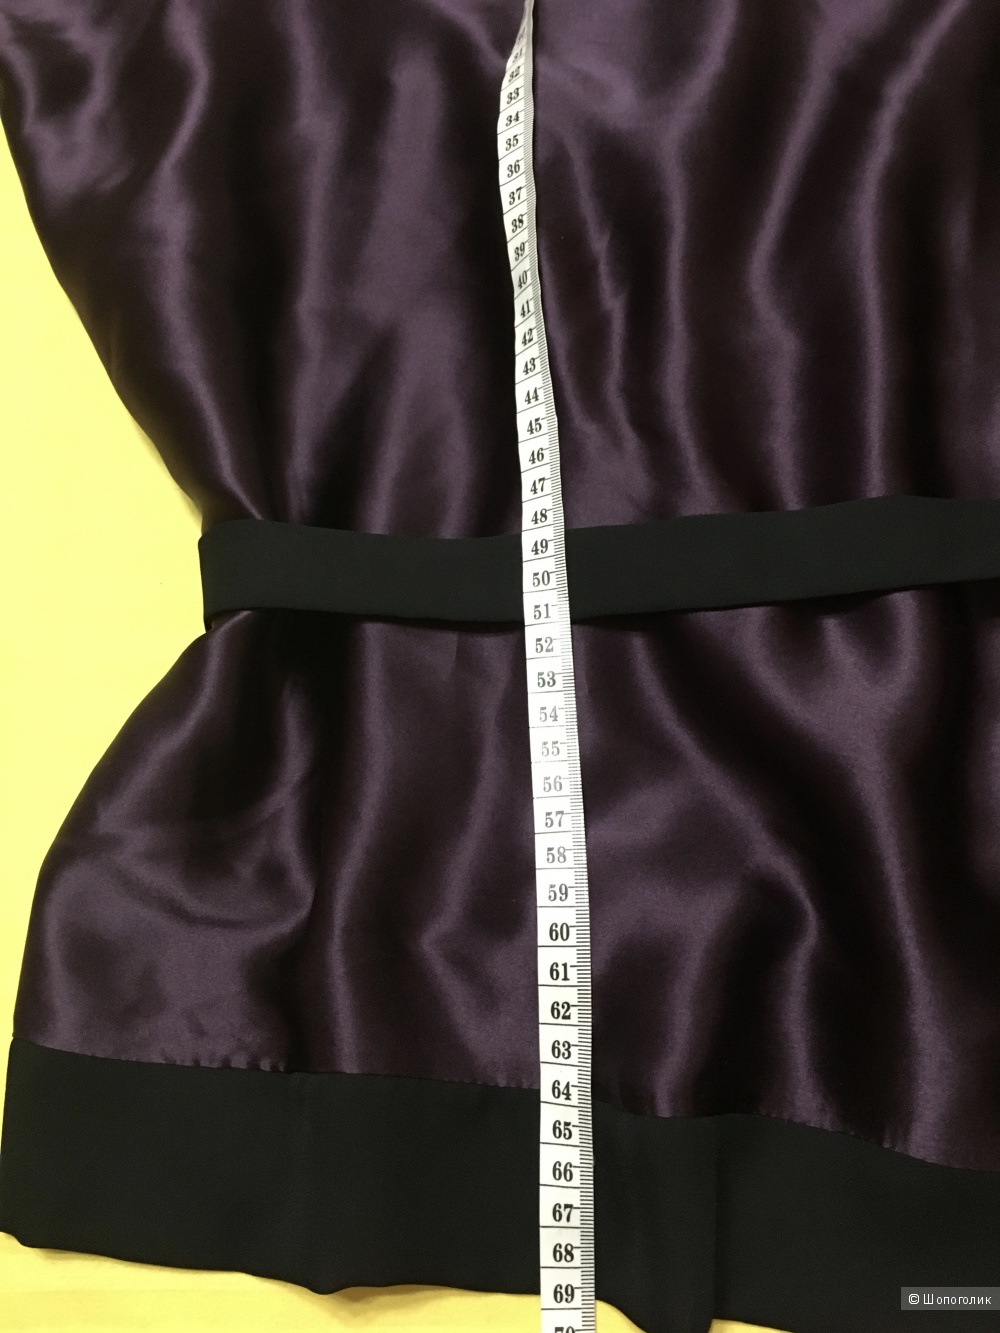 Шелковая блузка LAVINIATURRA, 46 (Российский размер) дизайнер:44 (IT). Темно-фиолетовый